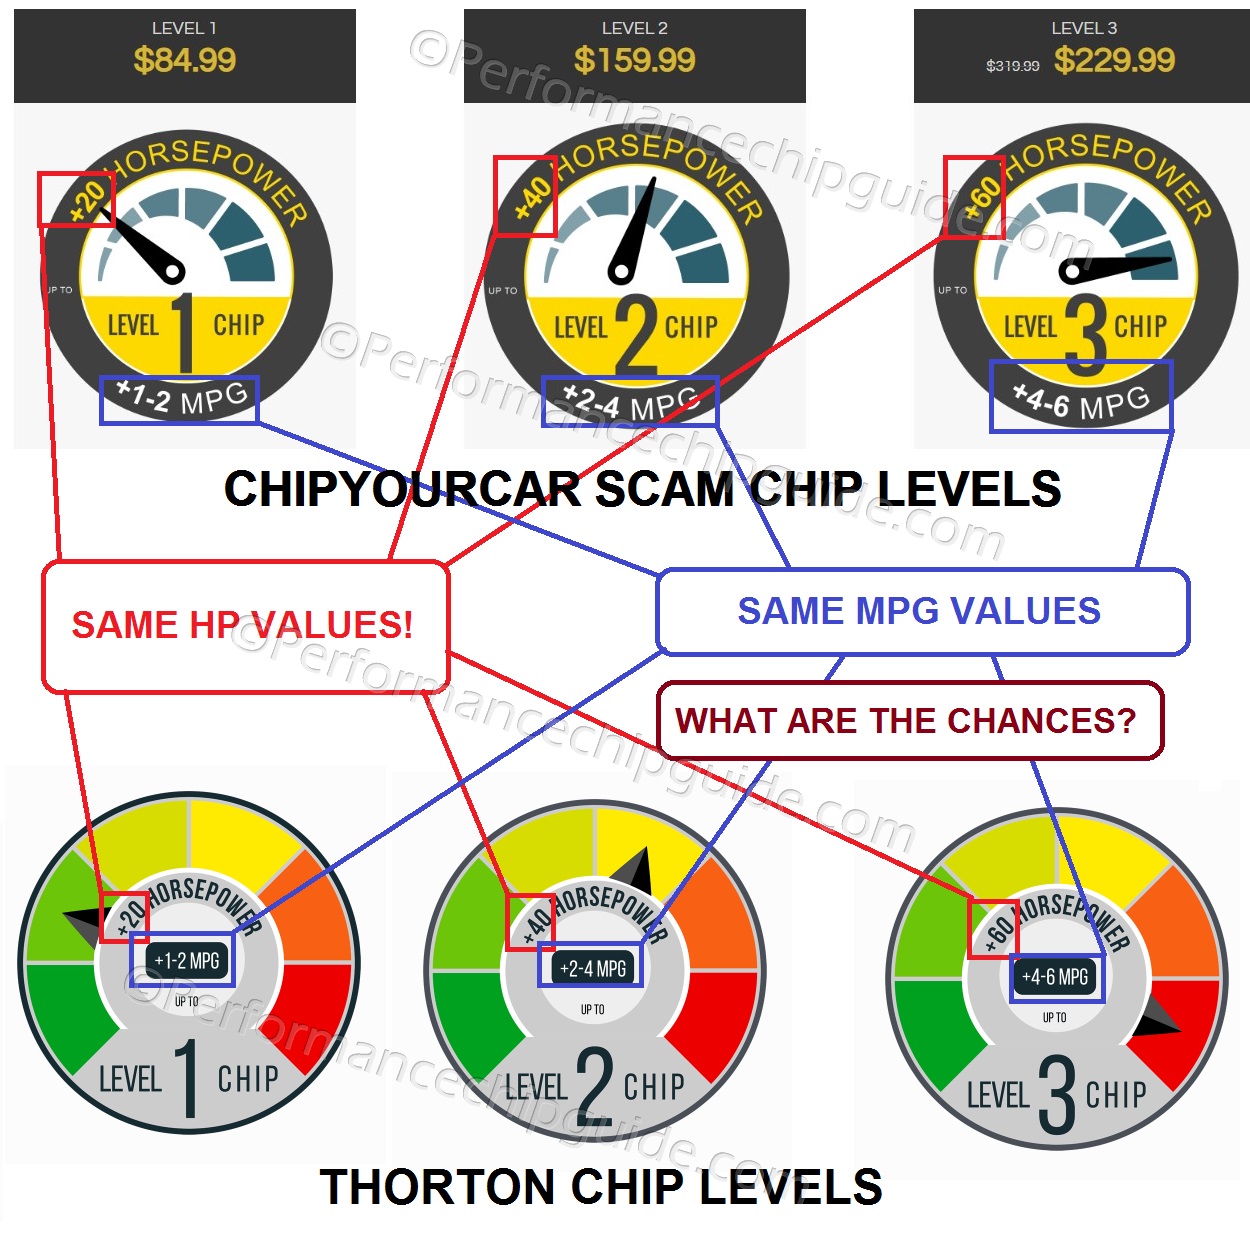 Chipyourcar Scam Chip Levels vs Thorton Chip Levels Comparison